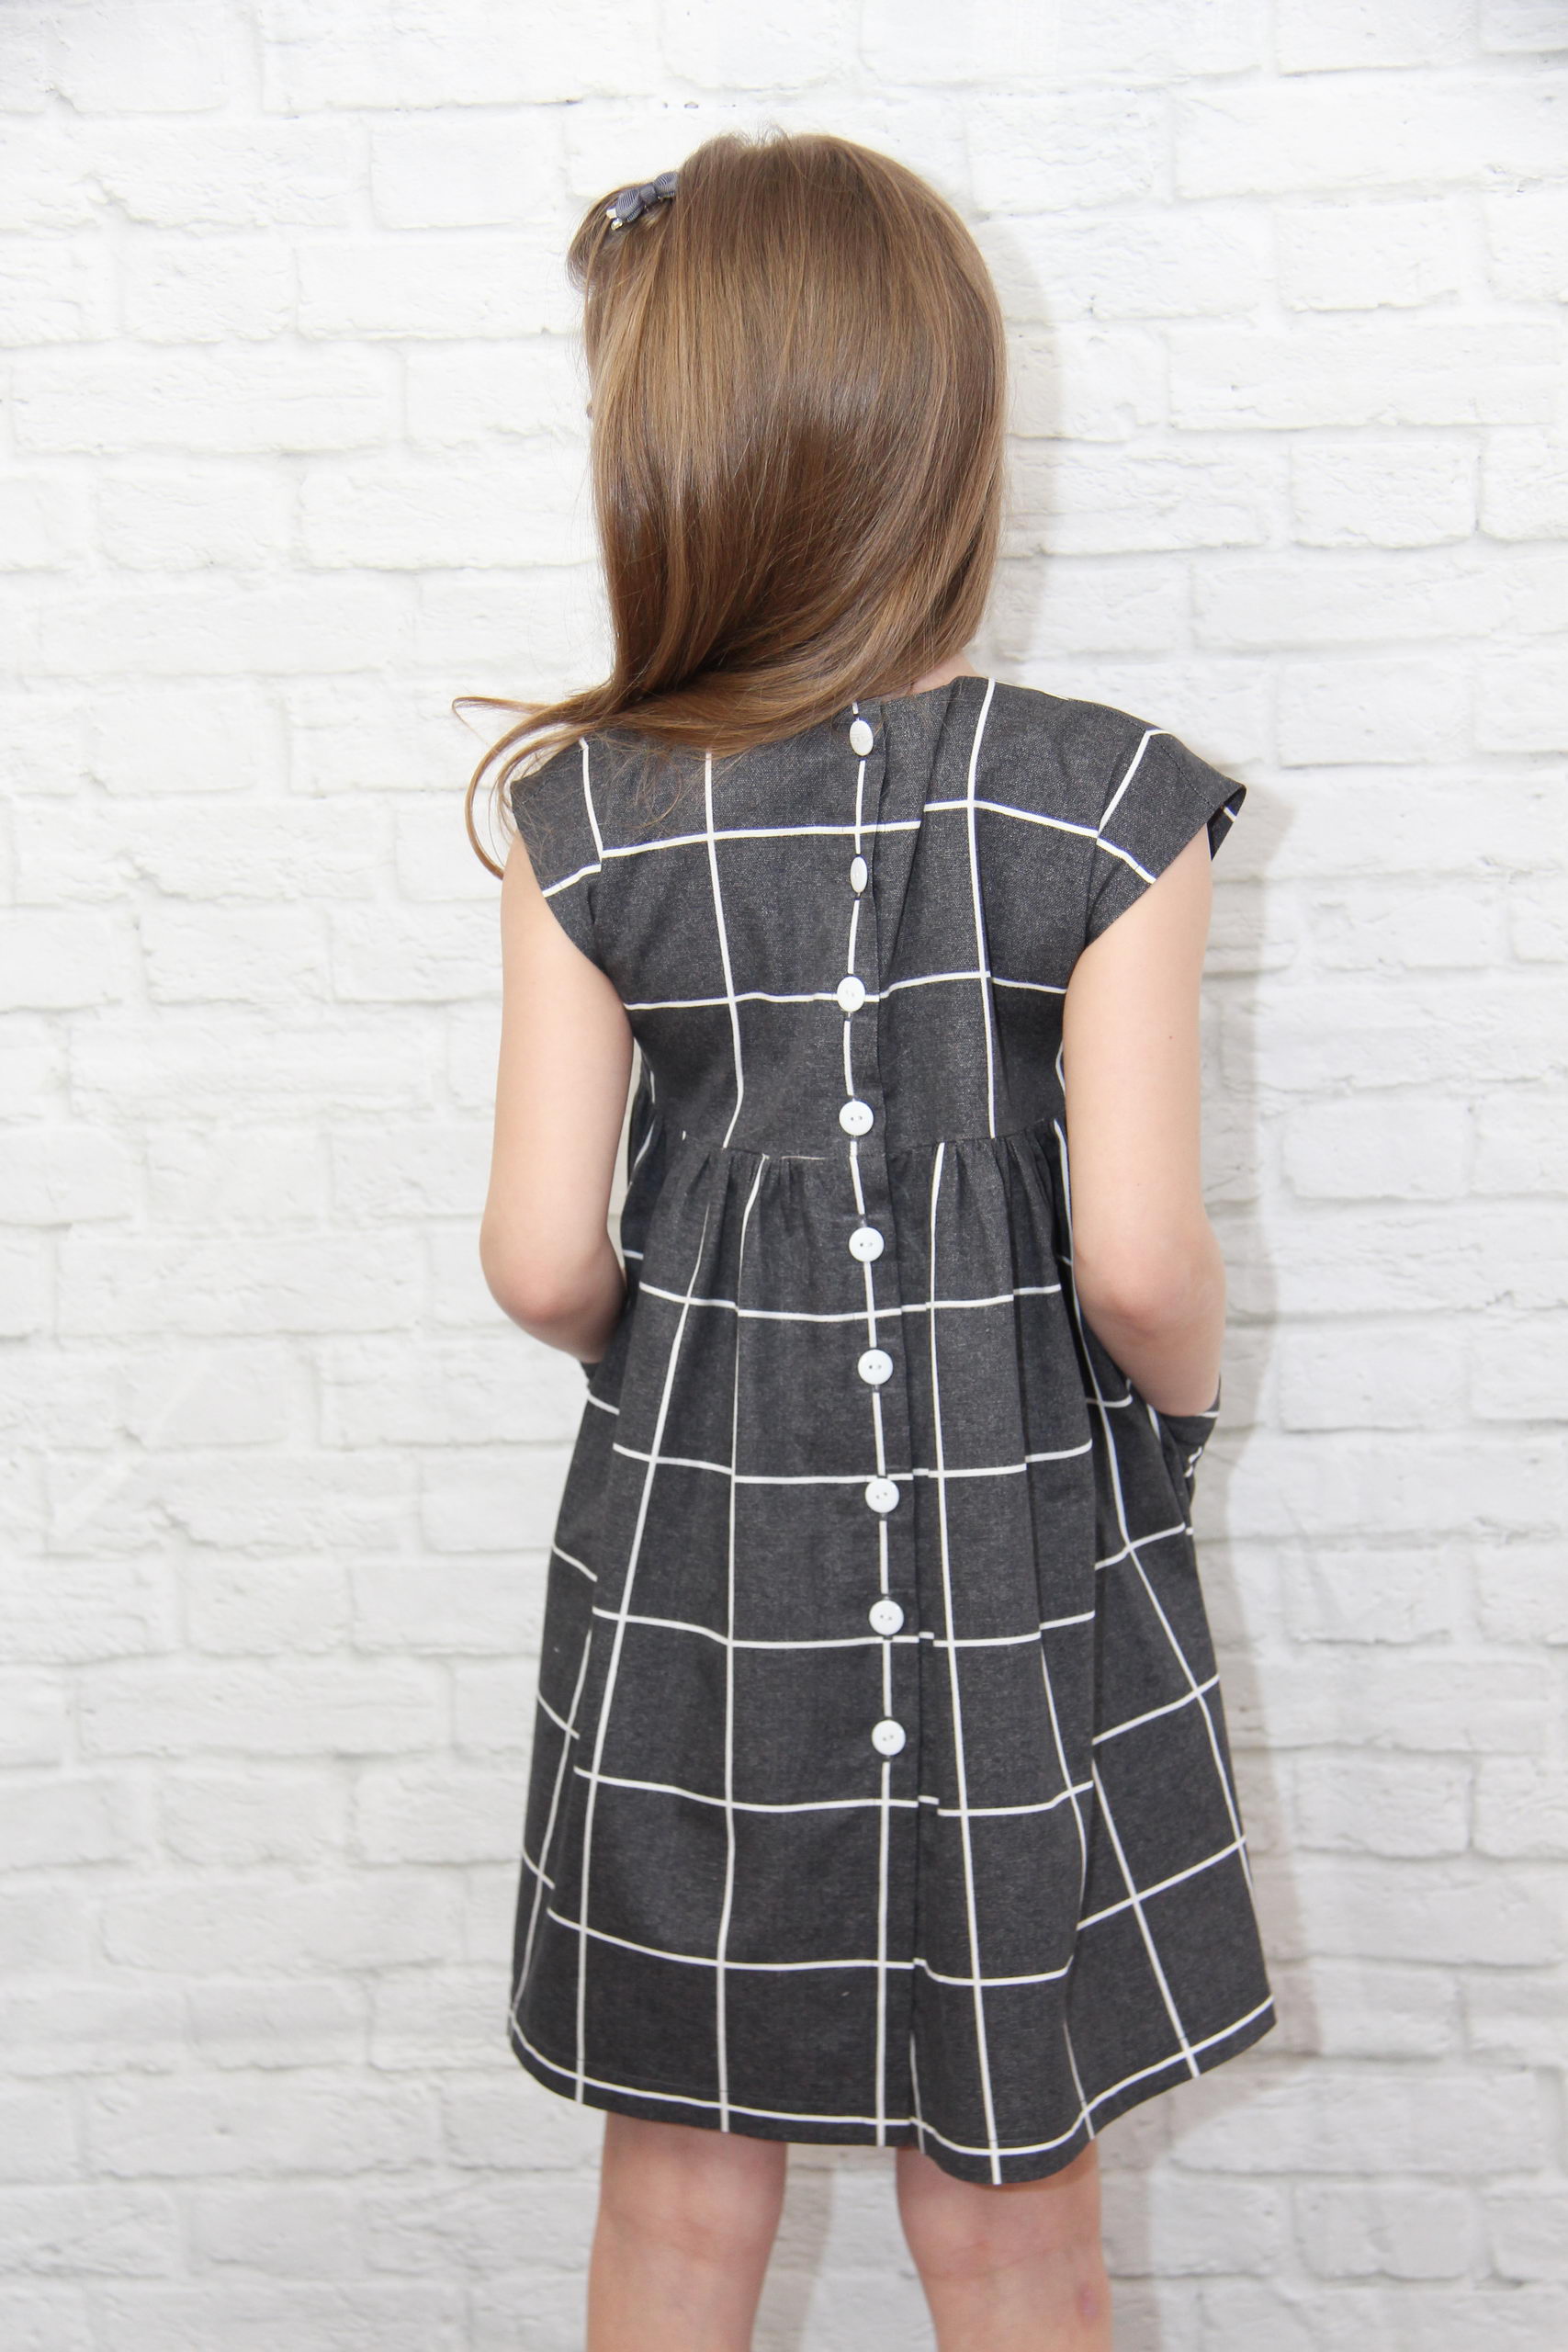 Lily Dress Sewing Pattern